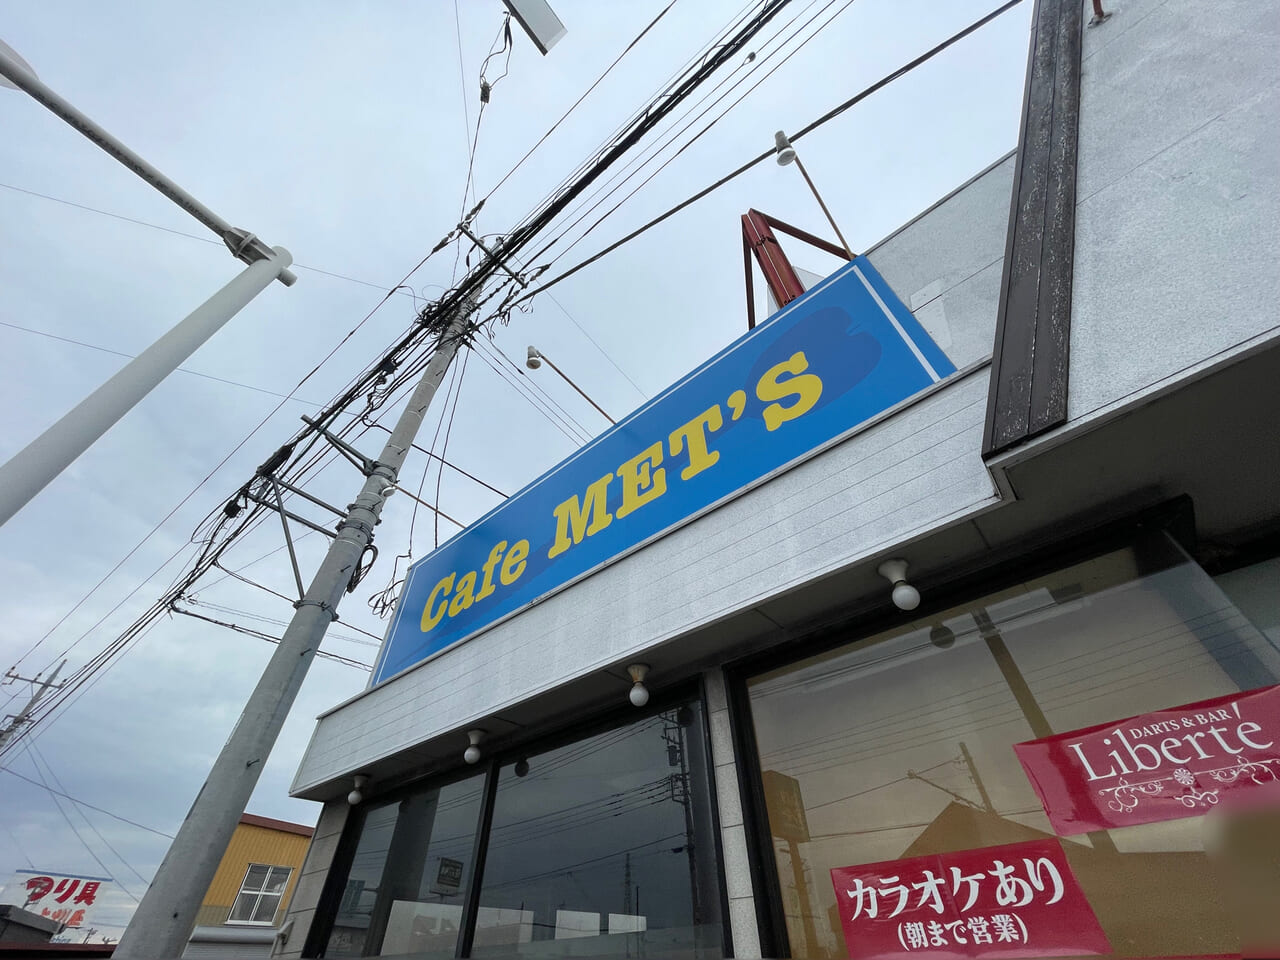 Cafe_Mets_貝沢_外観06